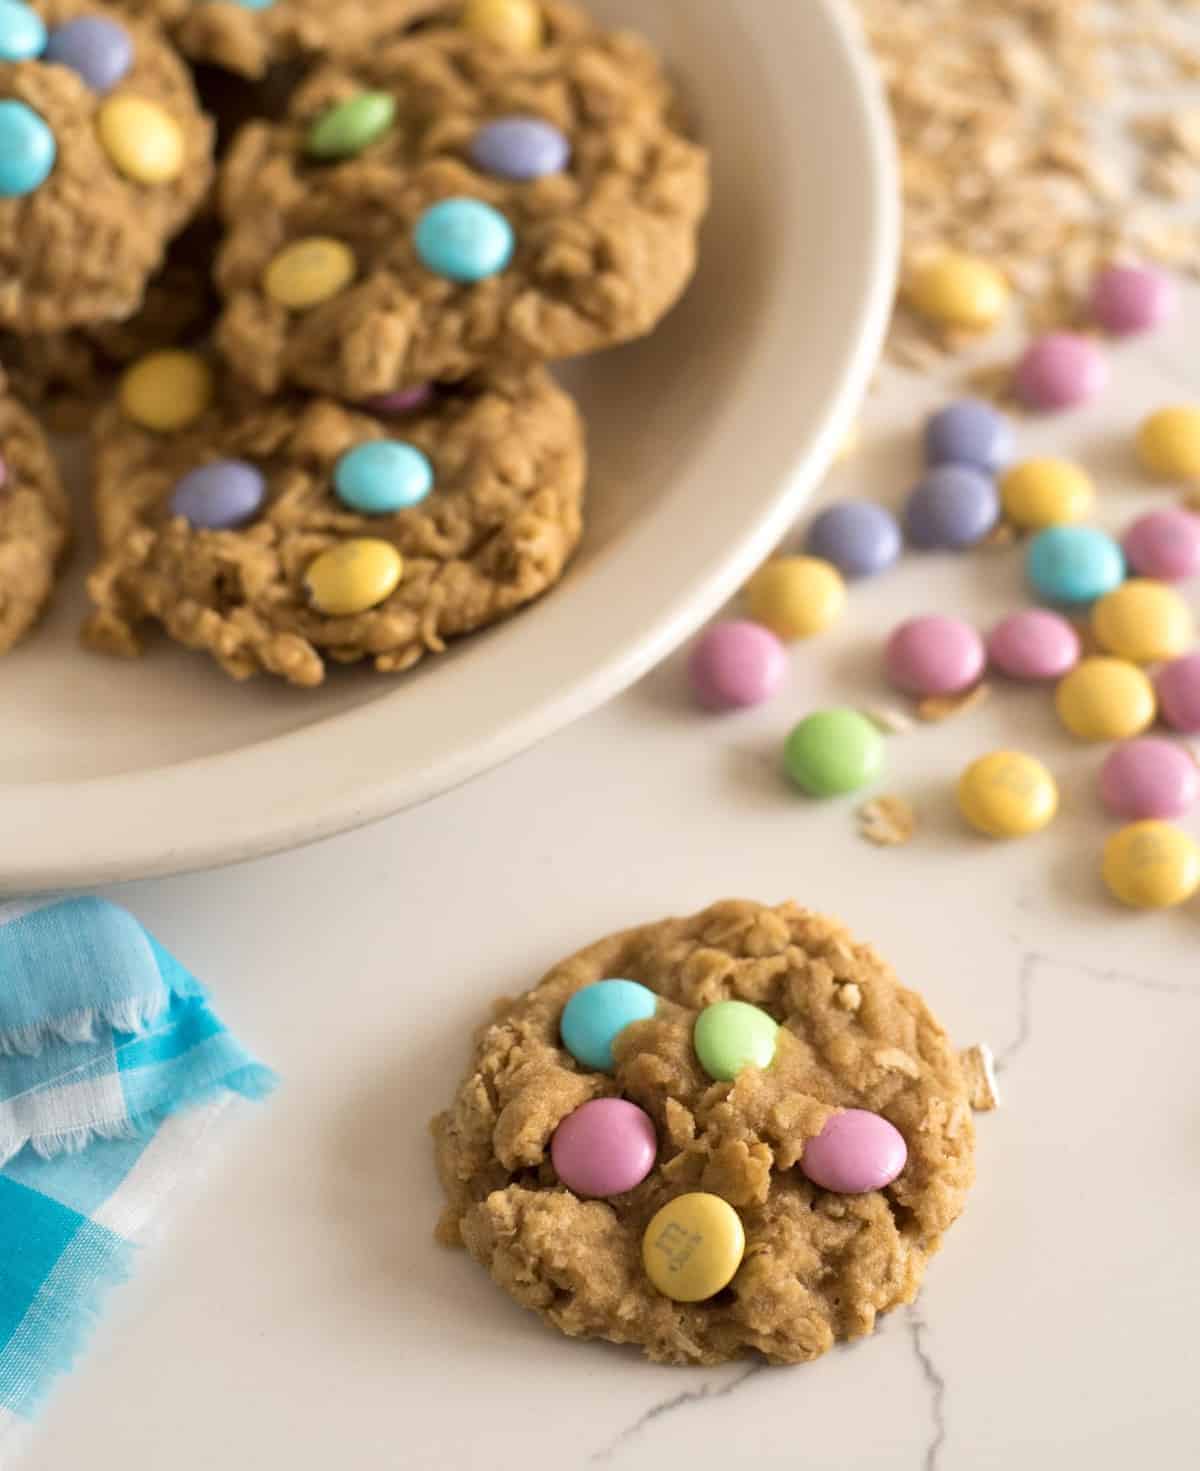 Homemade Oatmeal Cookie Recipe